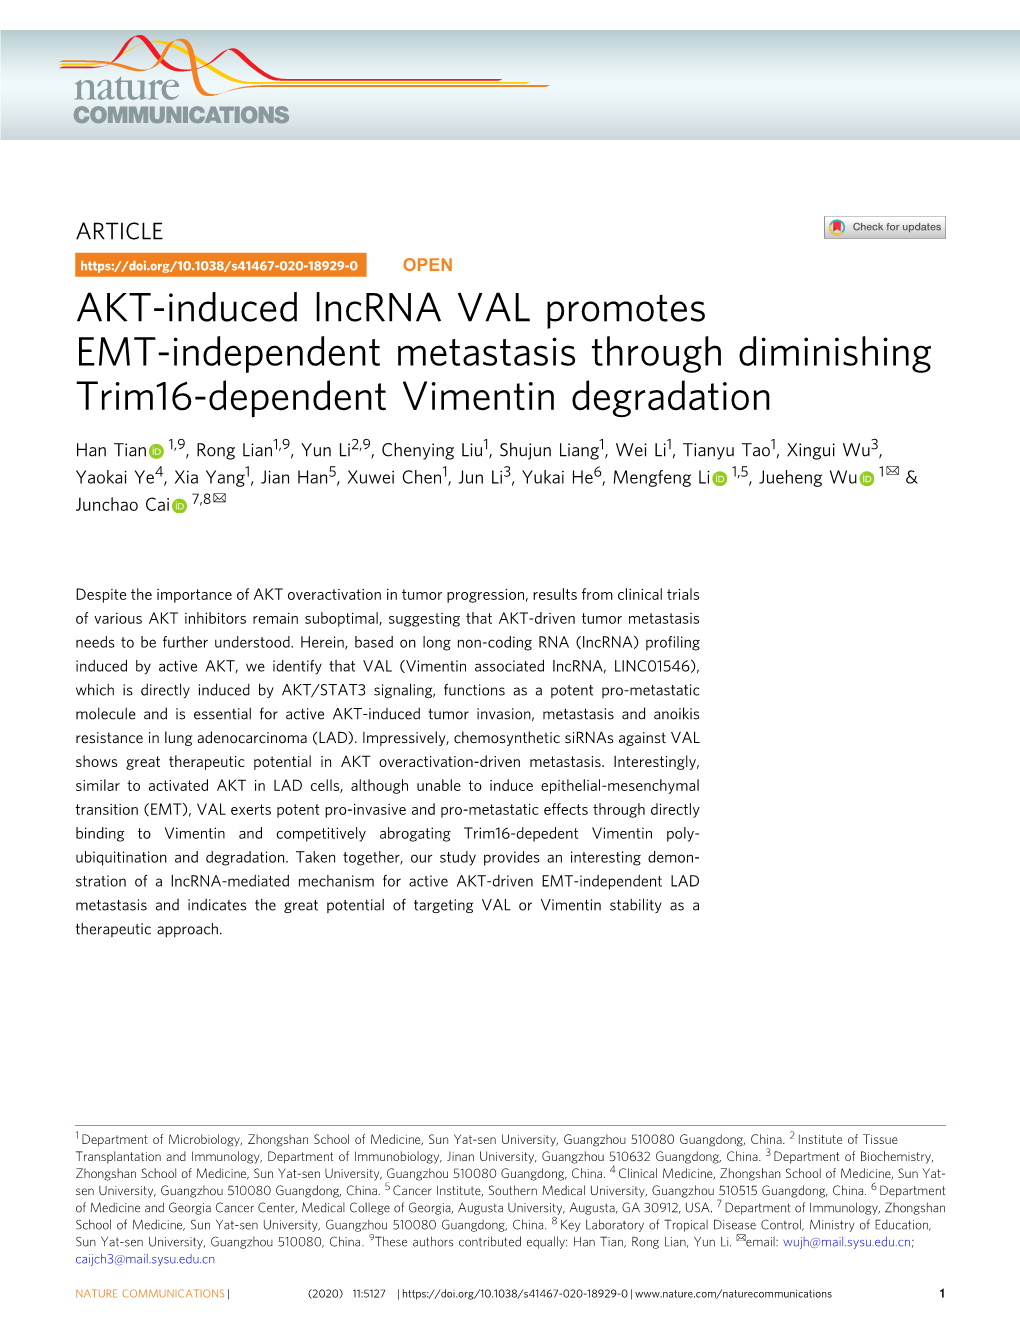 AKT-Induced Lncrna VAL Promotes EMT-Independent Metastasis Through Diminishing Trim16-Dependent Vimentin Degradation